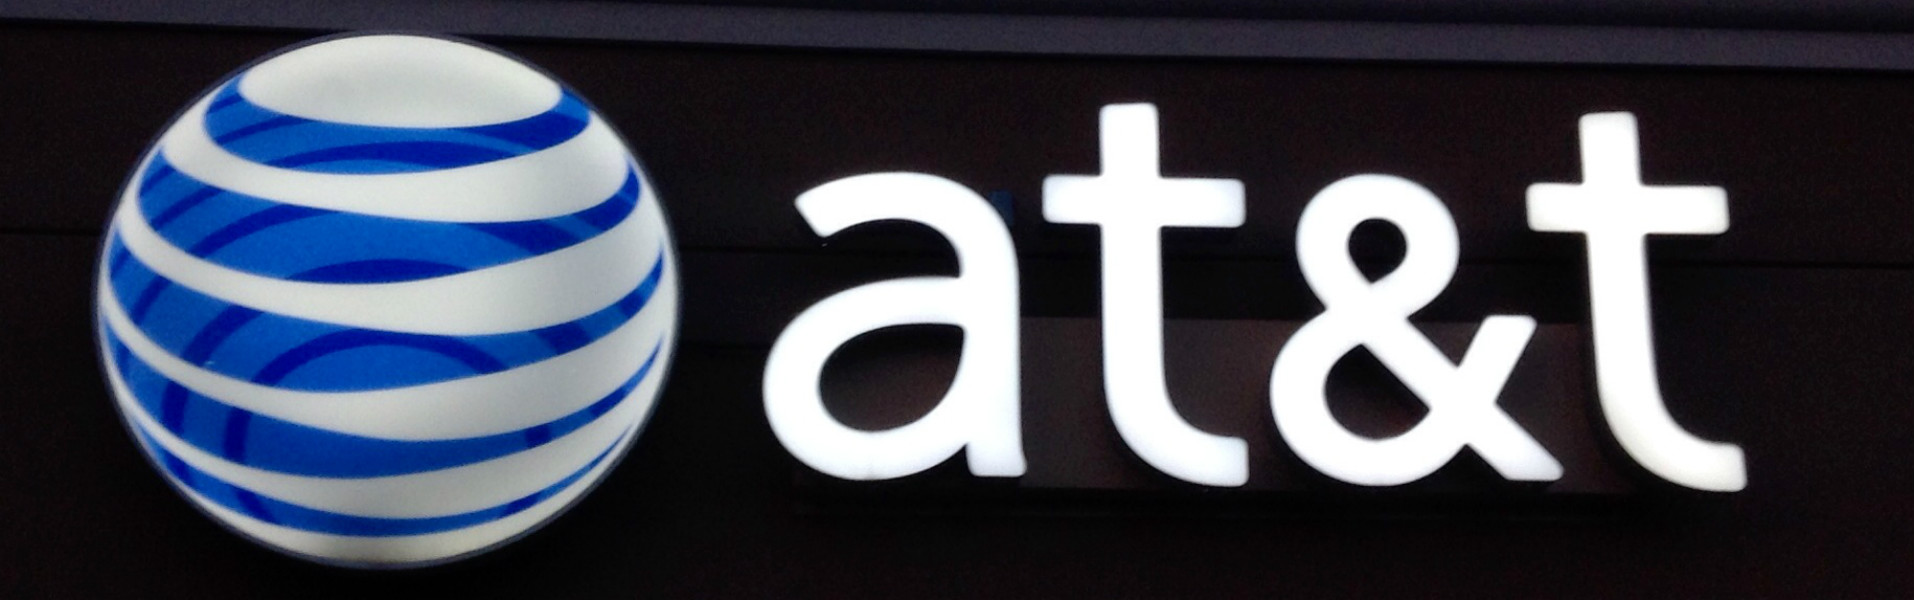 La compra de Warner por AT&T preocupa a defensores de la neutralidad de la red